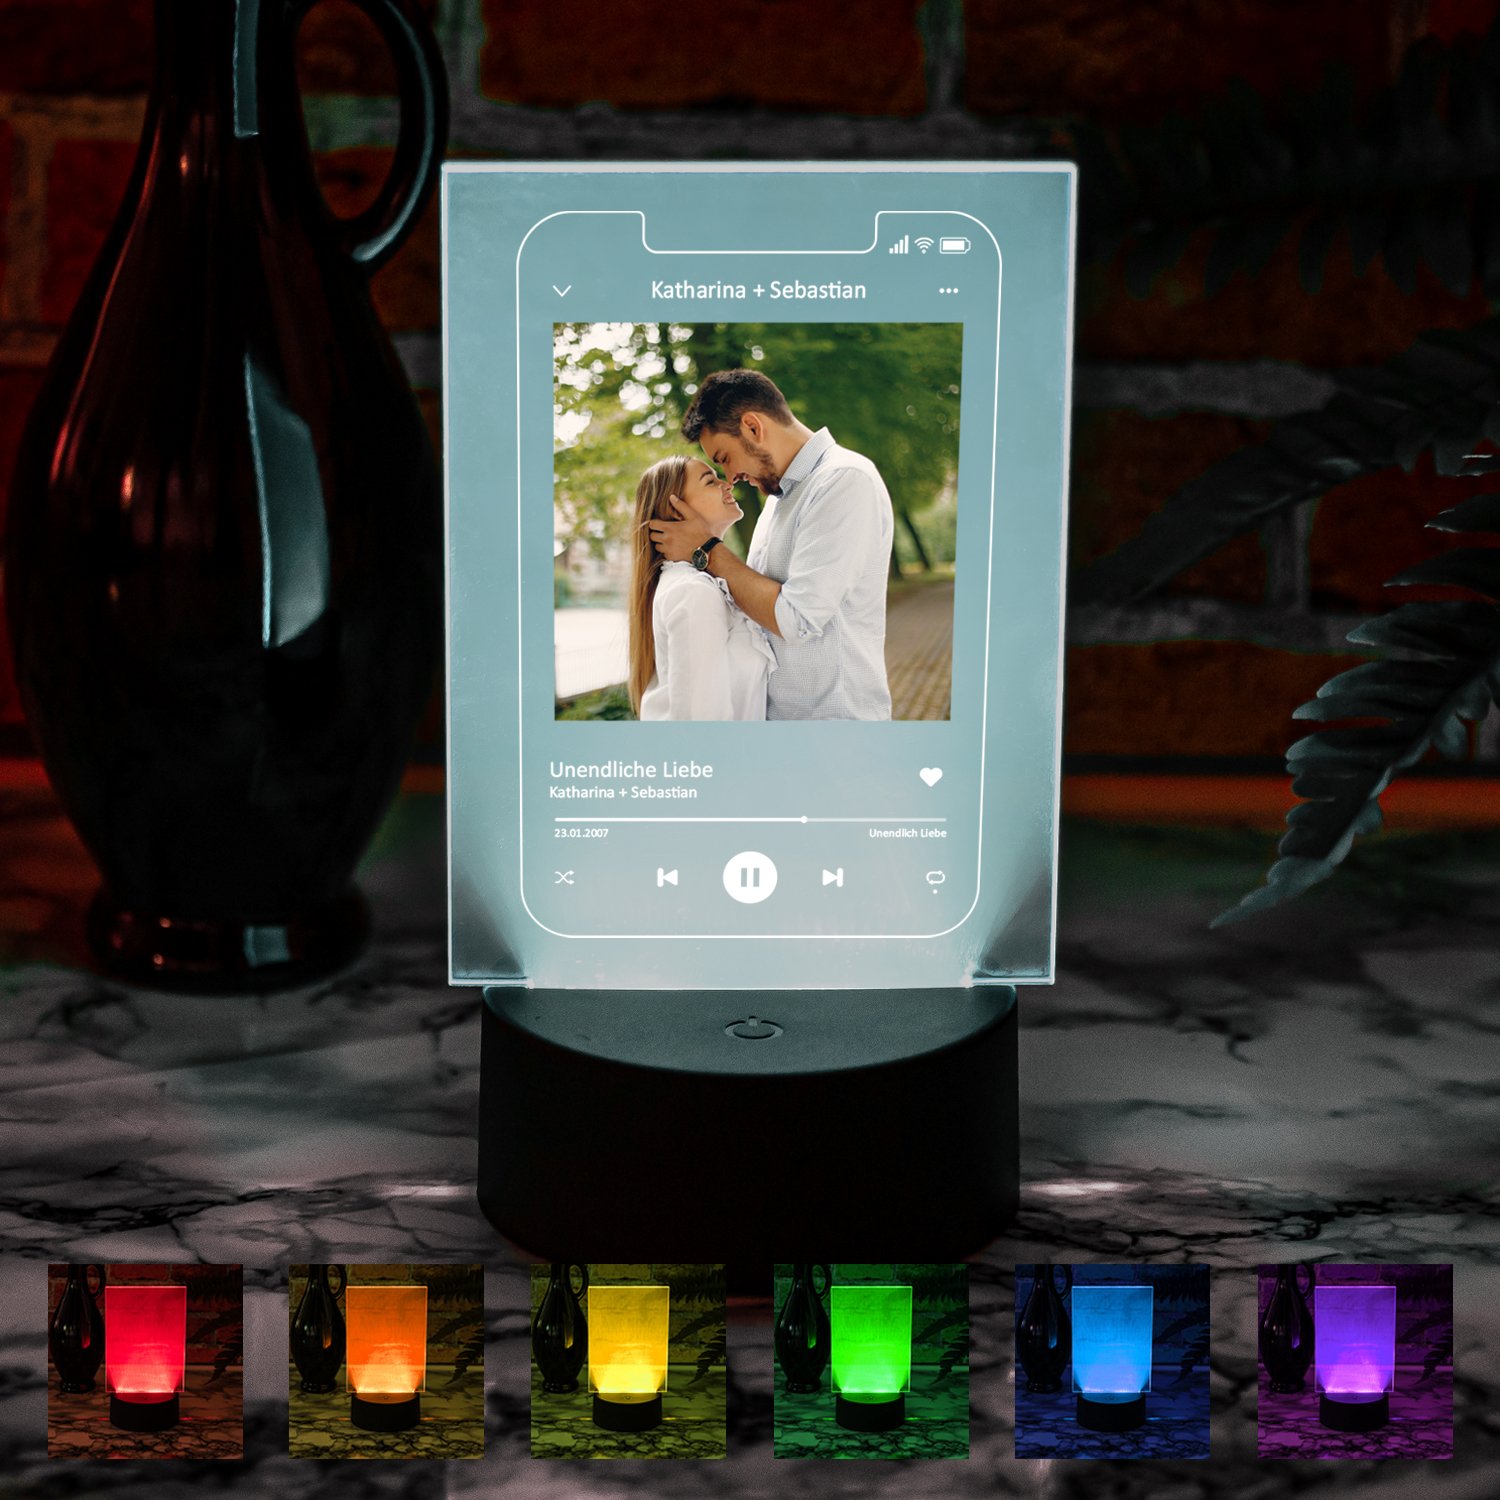 LED-Leuchte - Smartphone "Unendliche Liebe" mit Foto